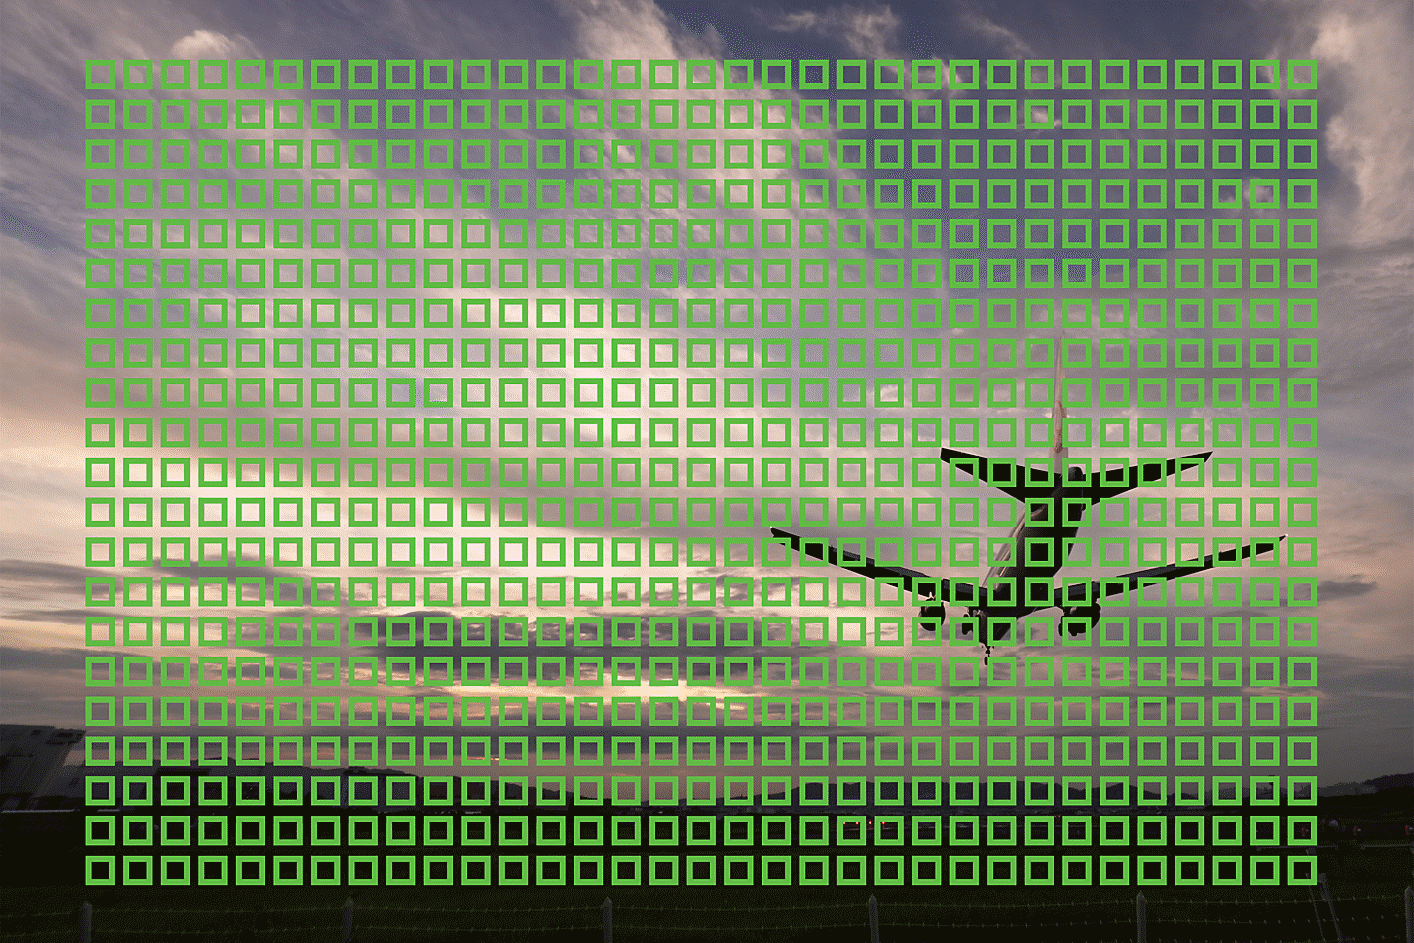 Imagem exemplificativa de um avião a pleno voo com pequenos quadrados que mostram os 693 pontos de AF na imagem